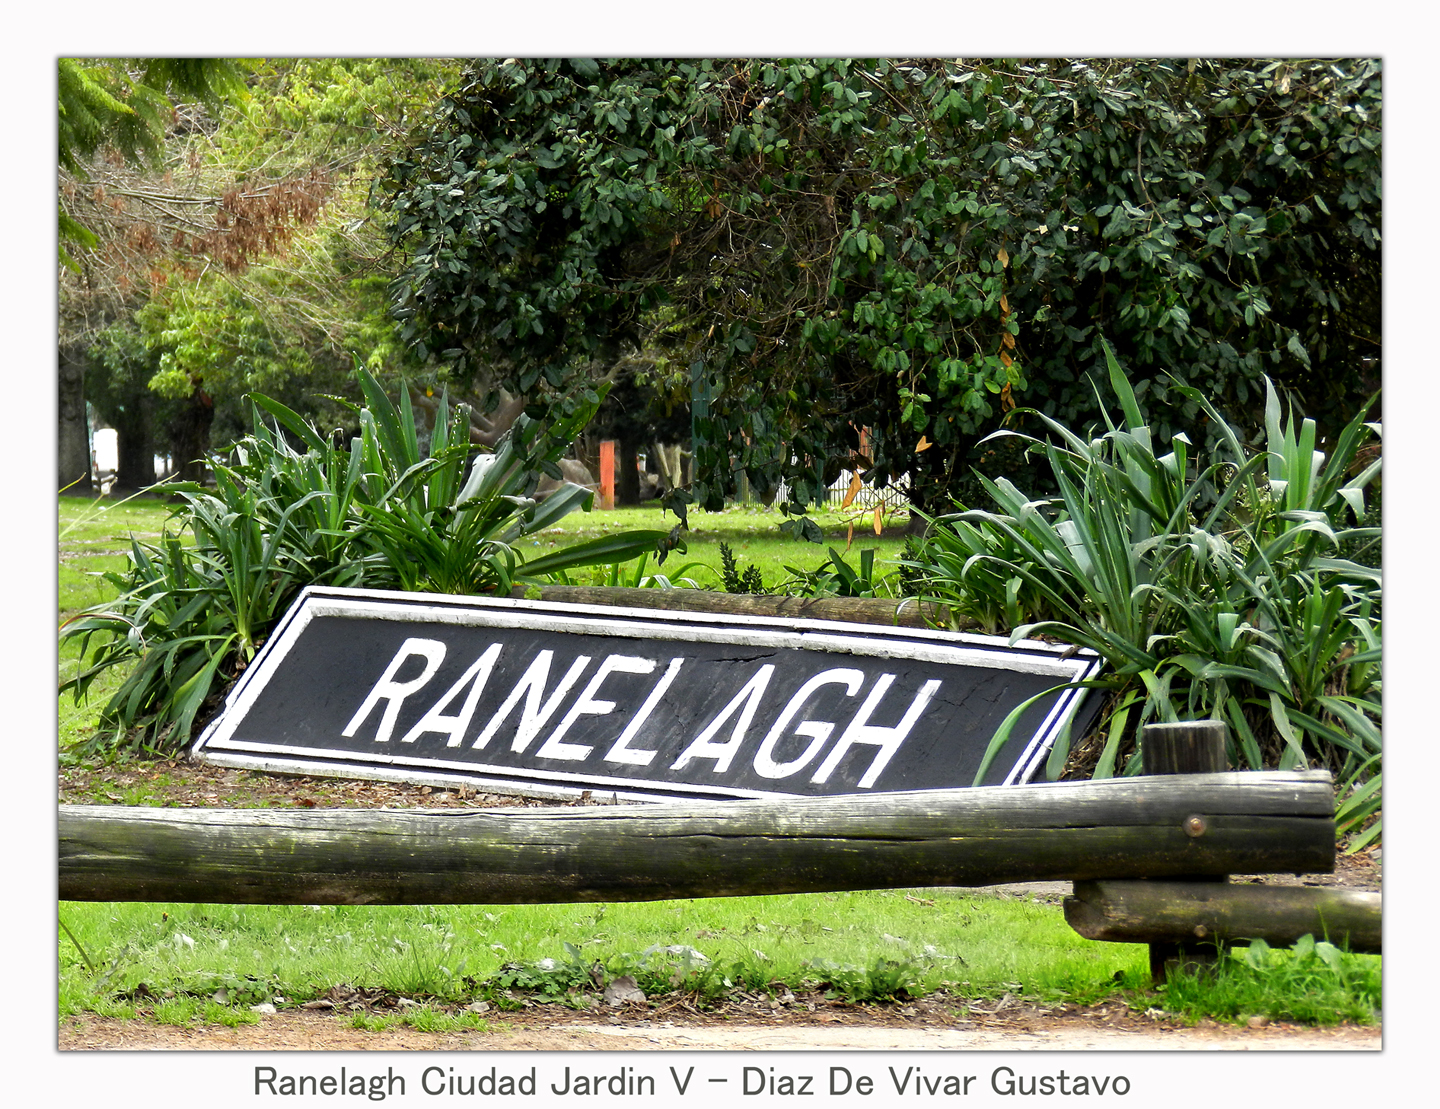 Foto: Ranelagh Ciudad Jardin - Diaz De Vivar Gustavo - Ranelagh (Buenos Aires), Argentina